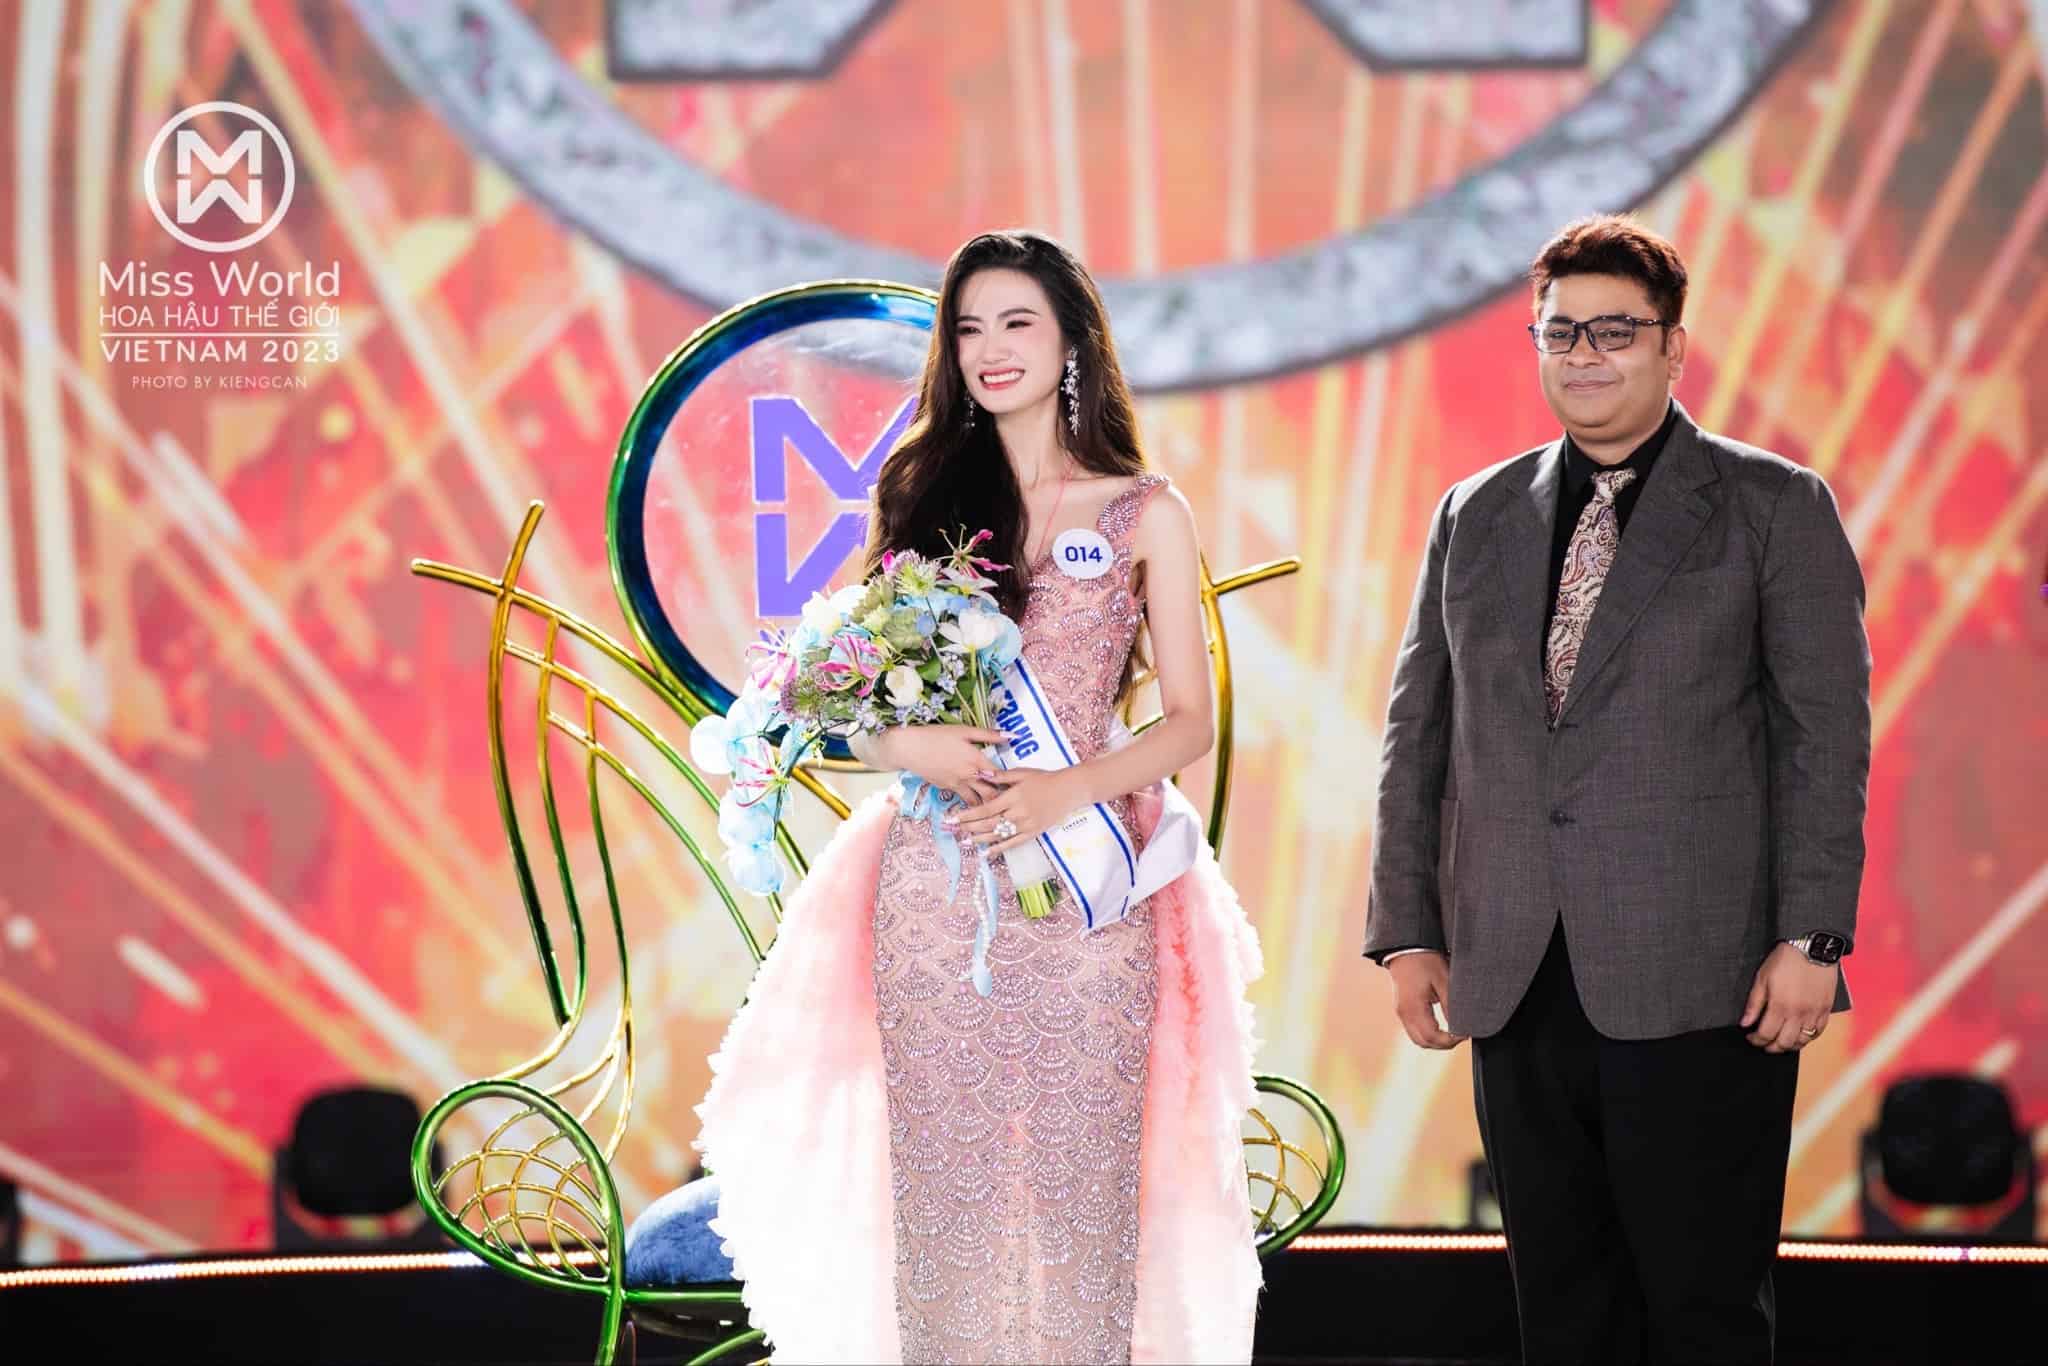  Ông Animesh Tyagi - Giám đốc điều hành công ty OPV trao hoa cho tân hoa hậu. Ảnh: Miss World Vietnam